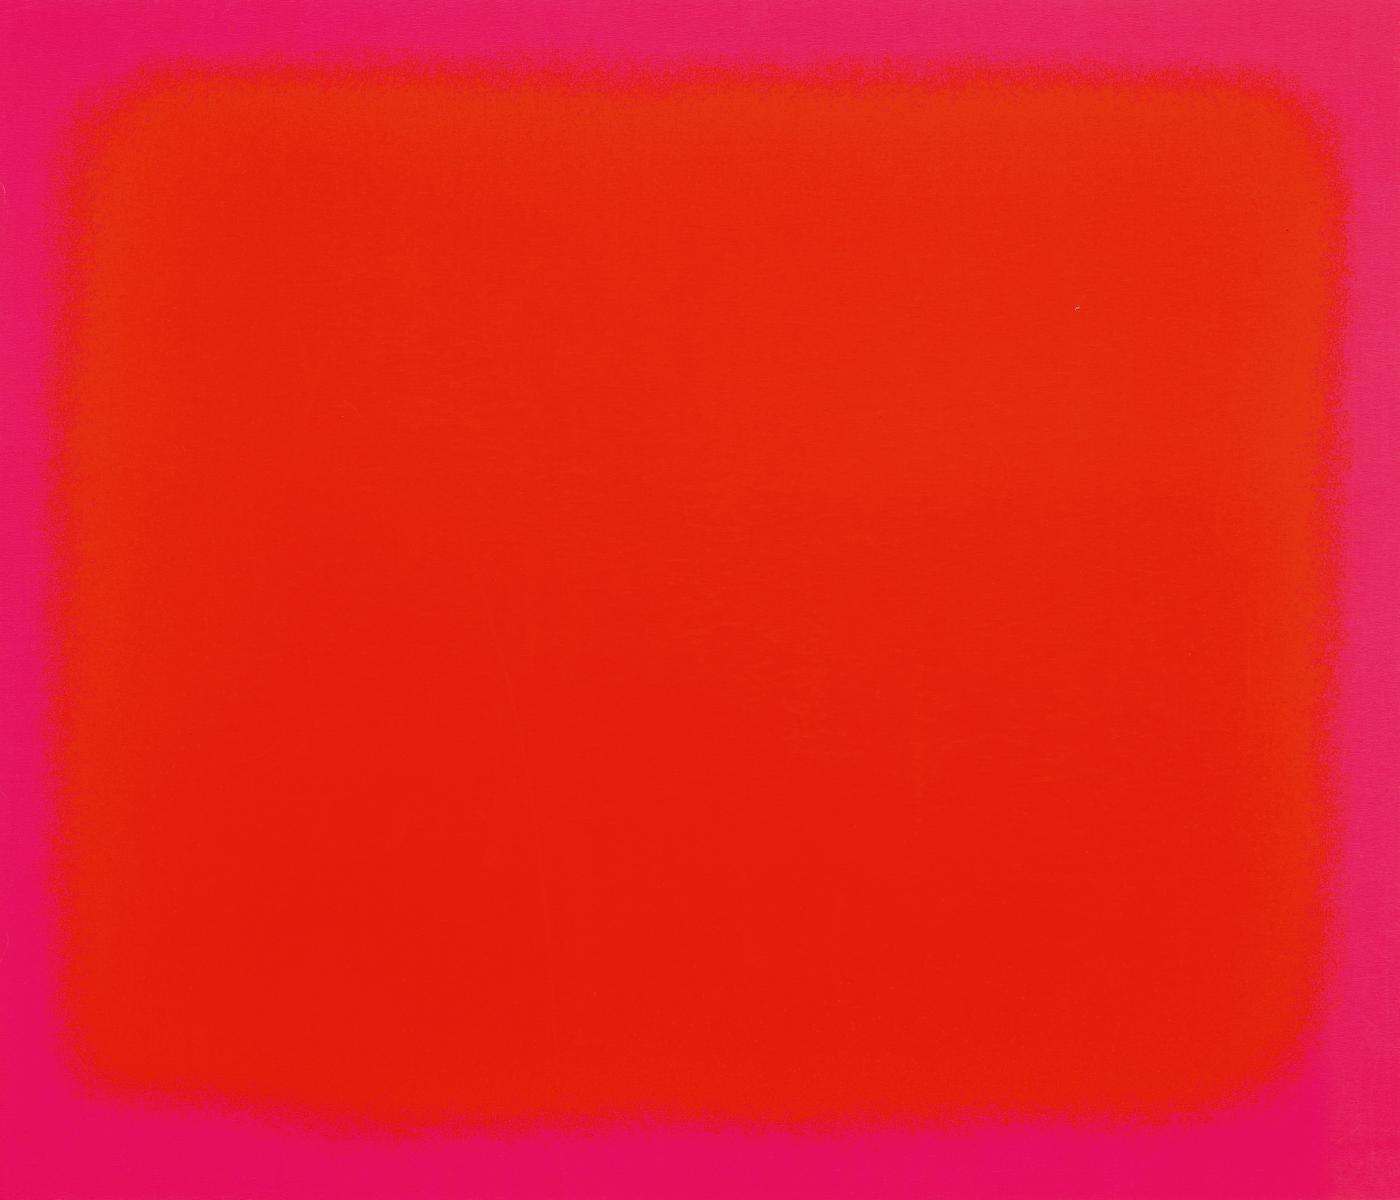 Rupprecht Geiger - Ohne Titel Rotes Element, 55554-3, Van Ham Kunstauktionen